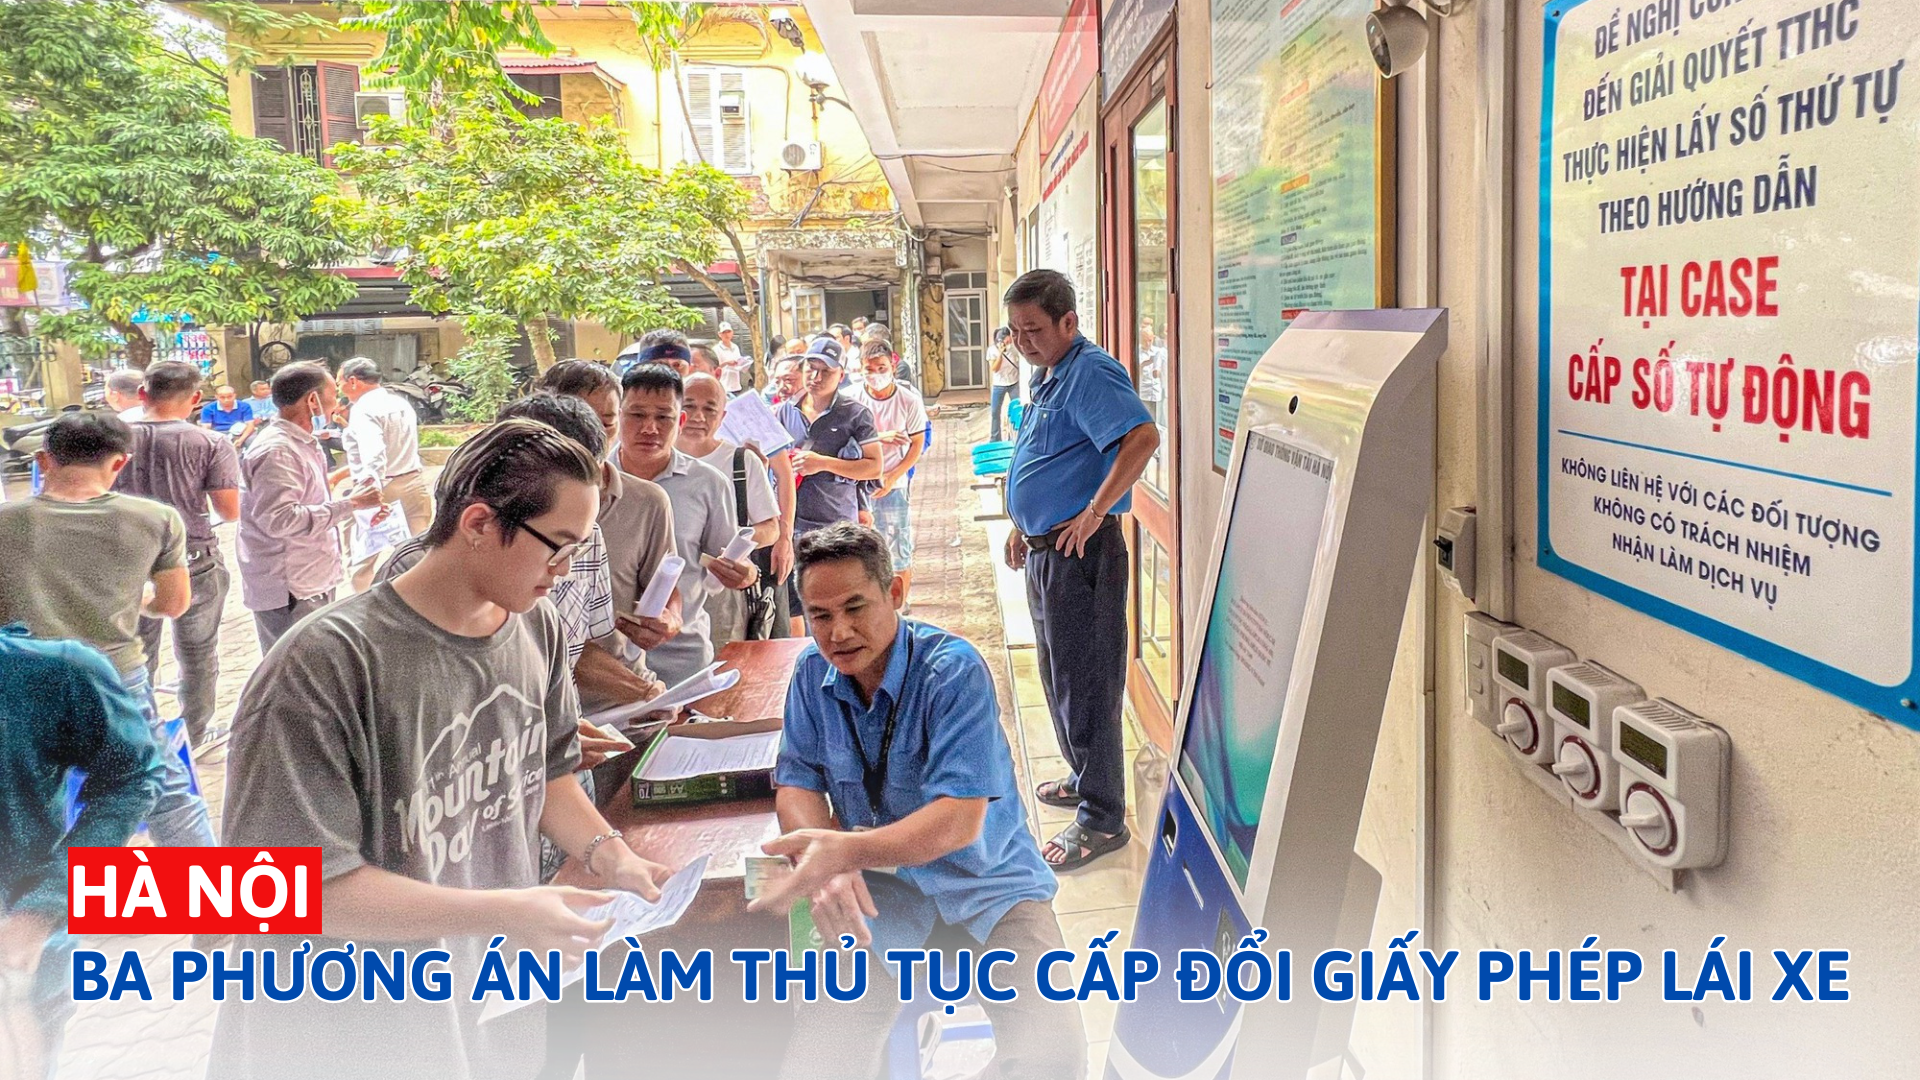 3 phương án làm thủ tục cấp đổi giấy phép lái xe tại Hà Nội